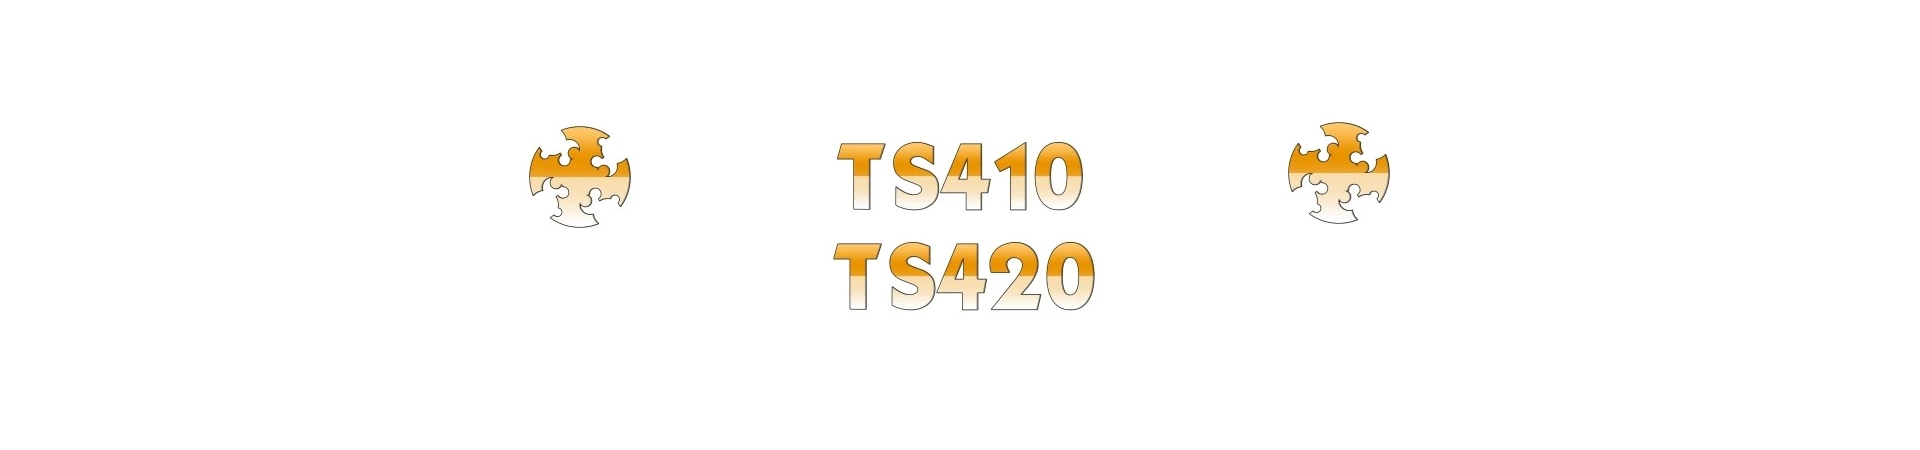 REPUESTOS para Cortadoras STIHL TS410 TS420